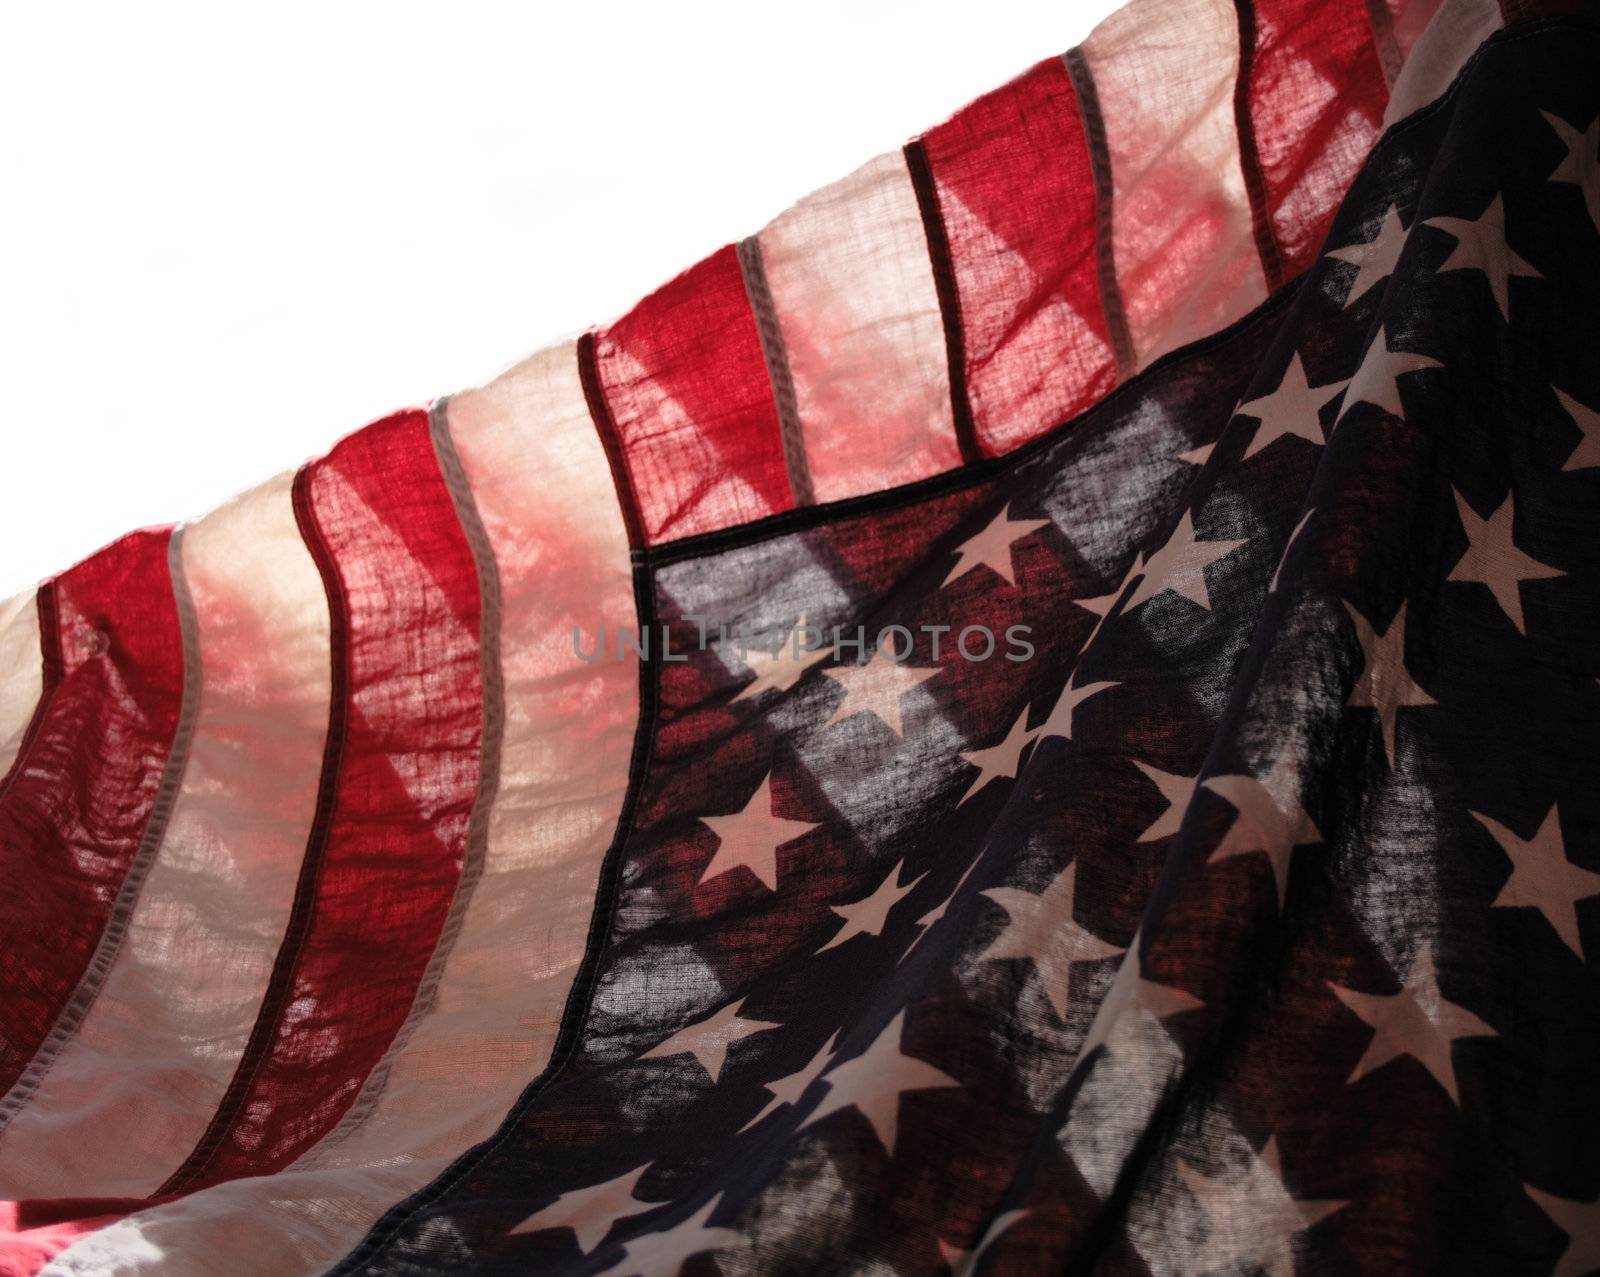 backlit old American flag showing stars over stripes